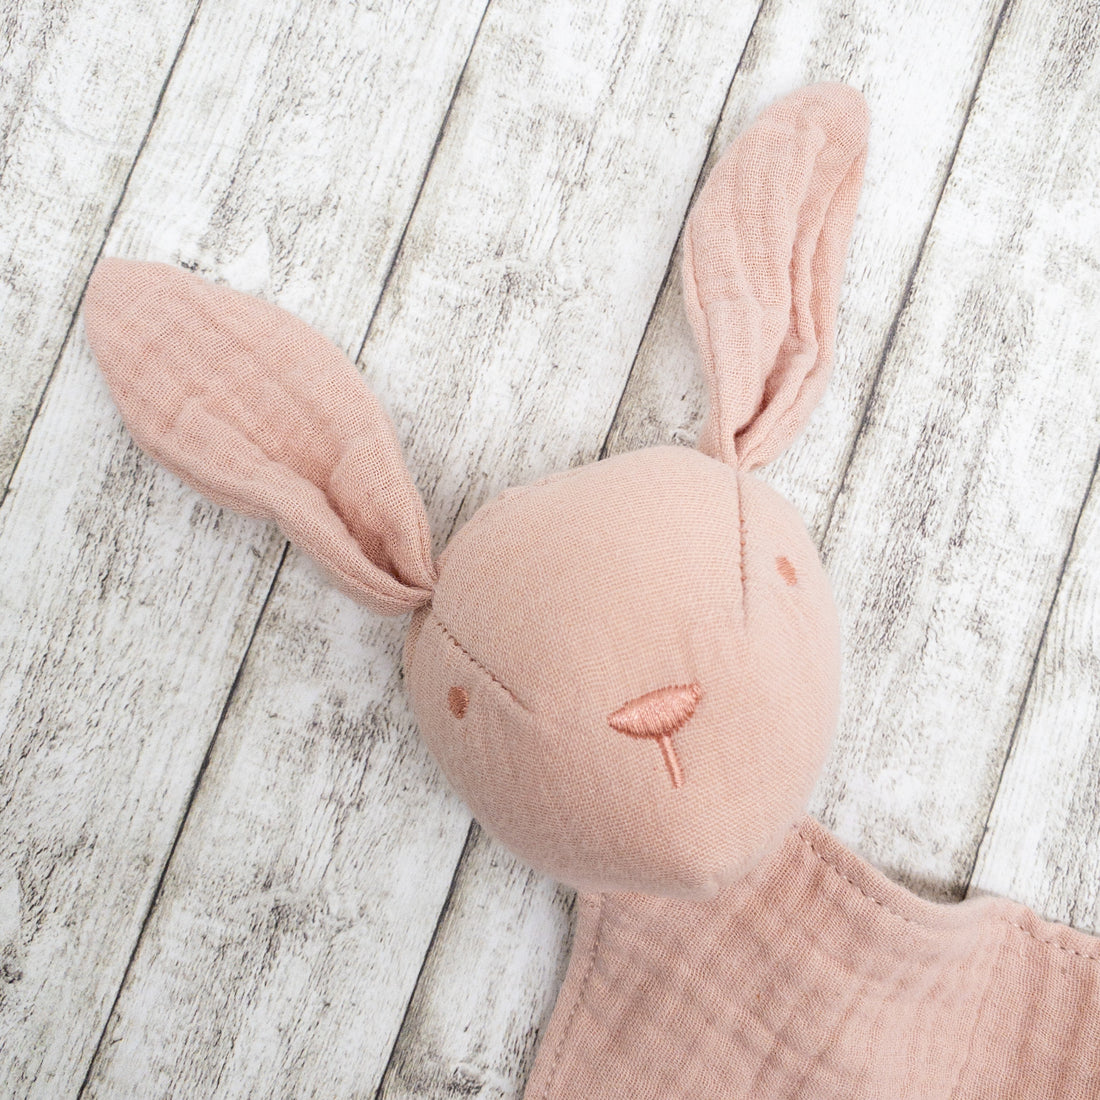 Schnuffeltuch Schmusetuch Hase rosa mit Personalisierung für Babys